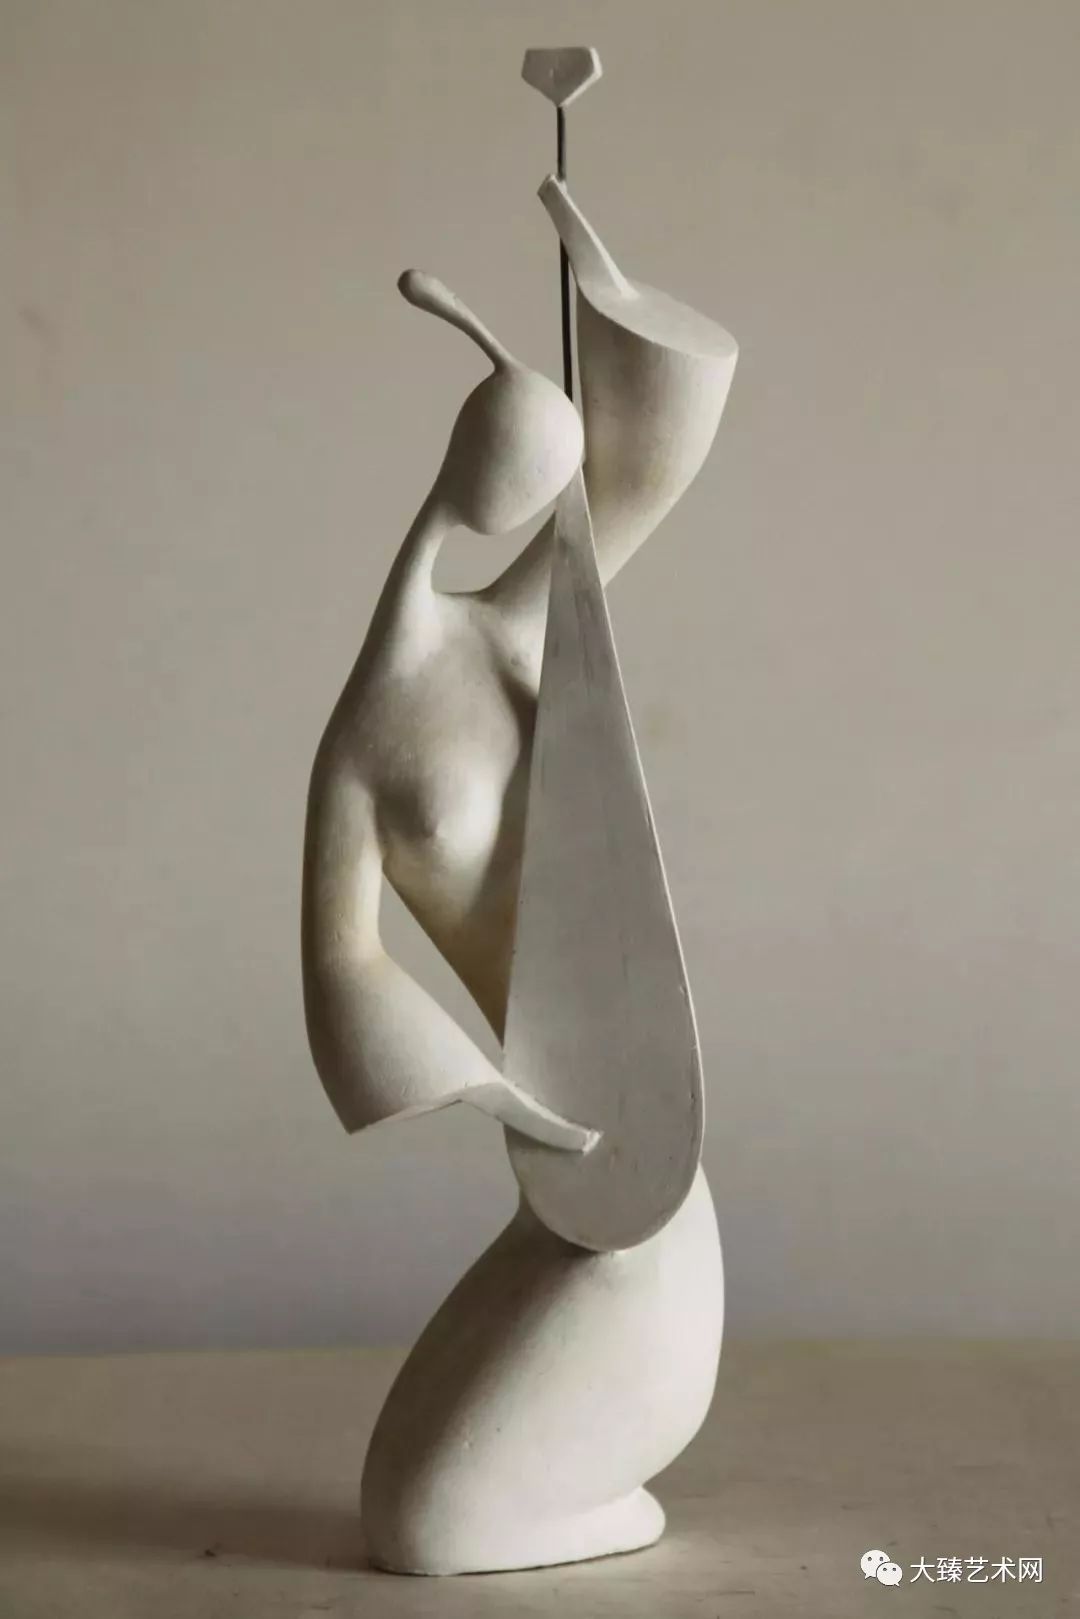 雕塑家易乐平优秀雕塑作品赏析